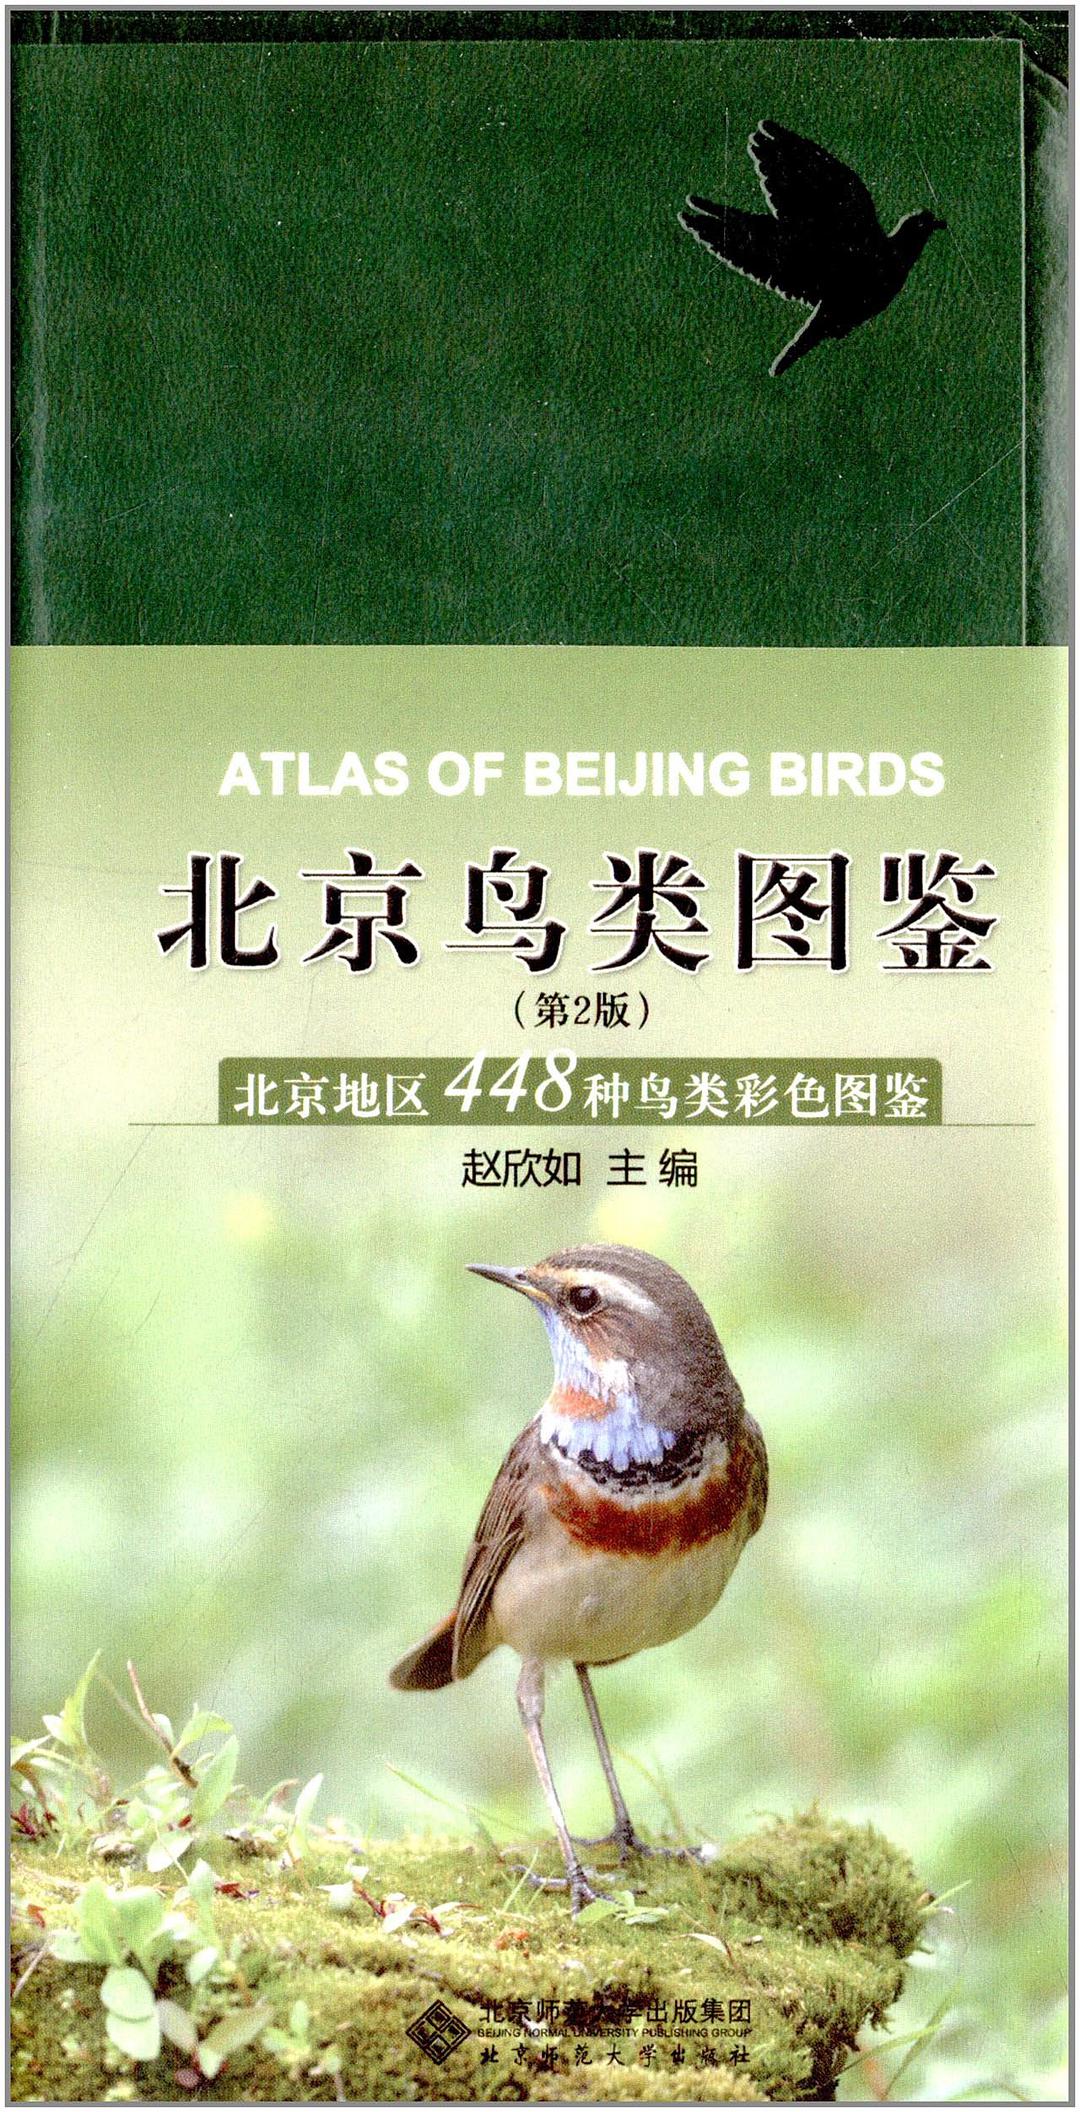 北京鸟类图鉴 北京地区448种鸟类彩色图鉴